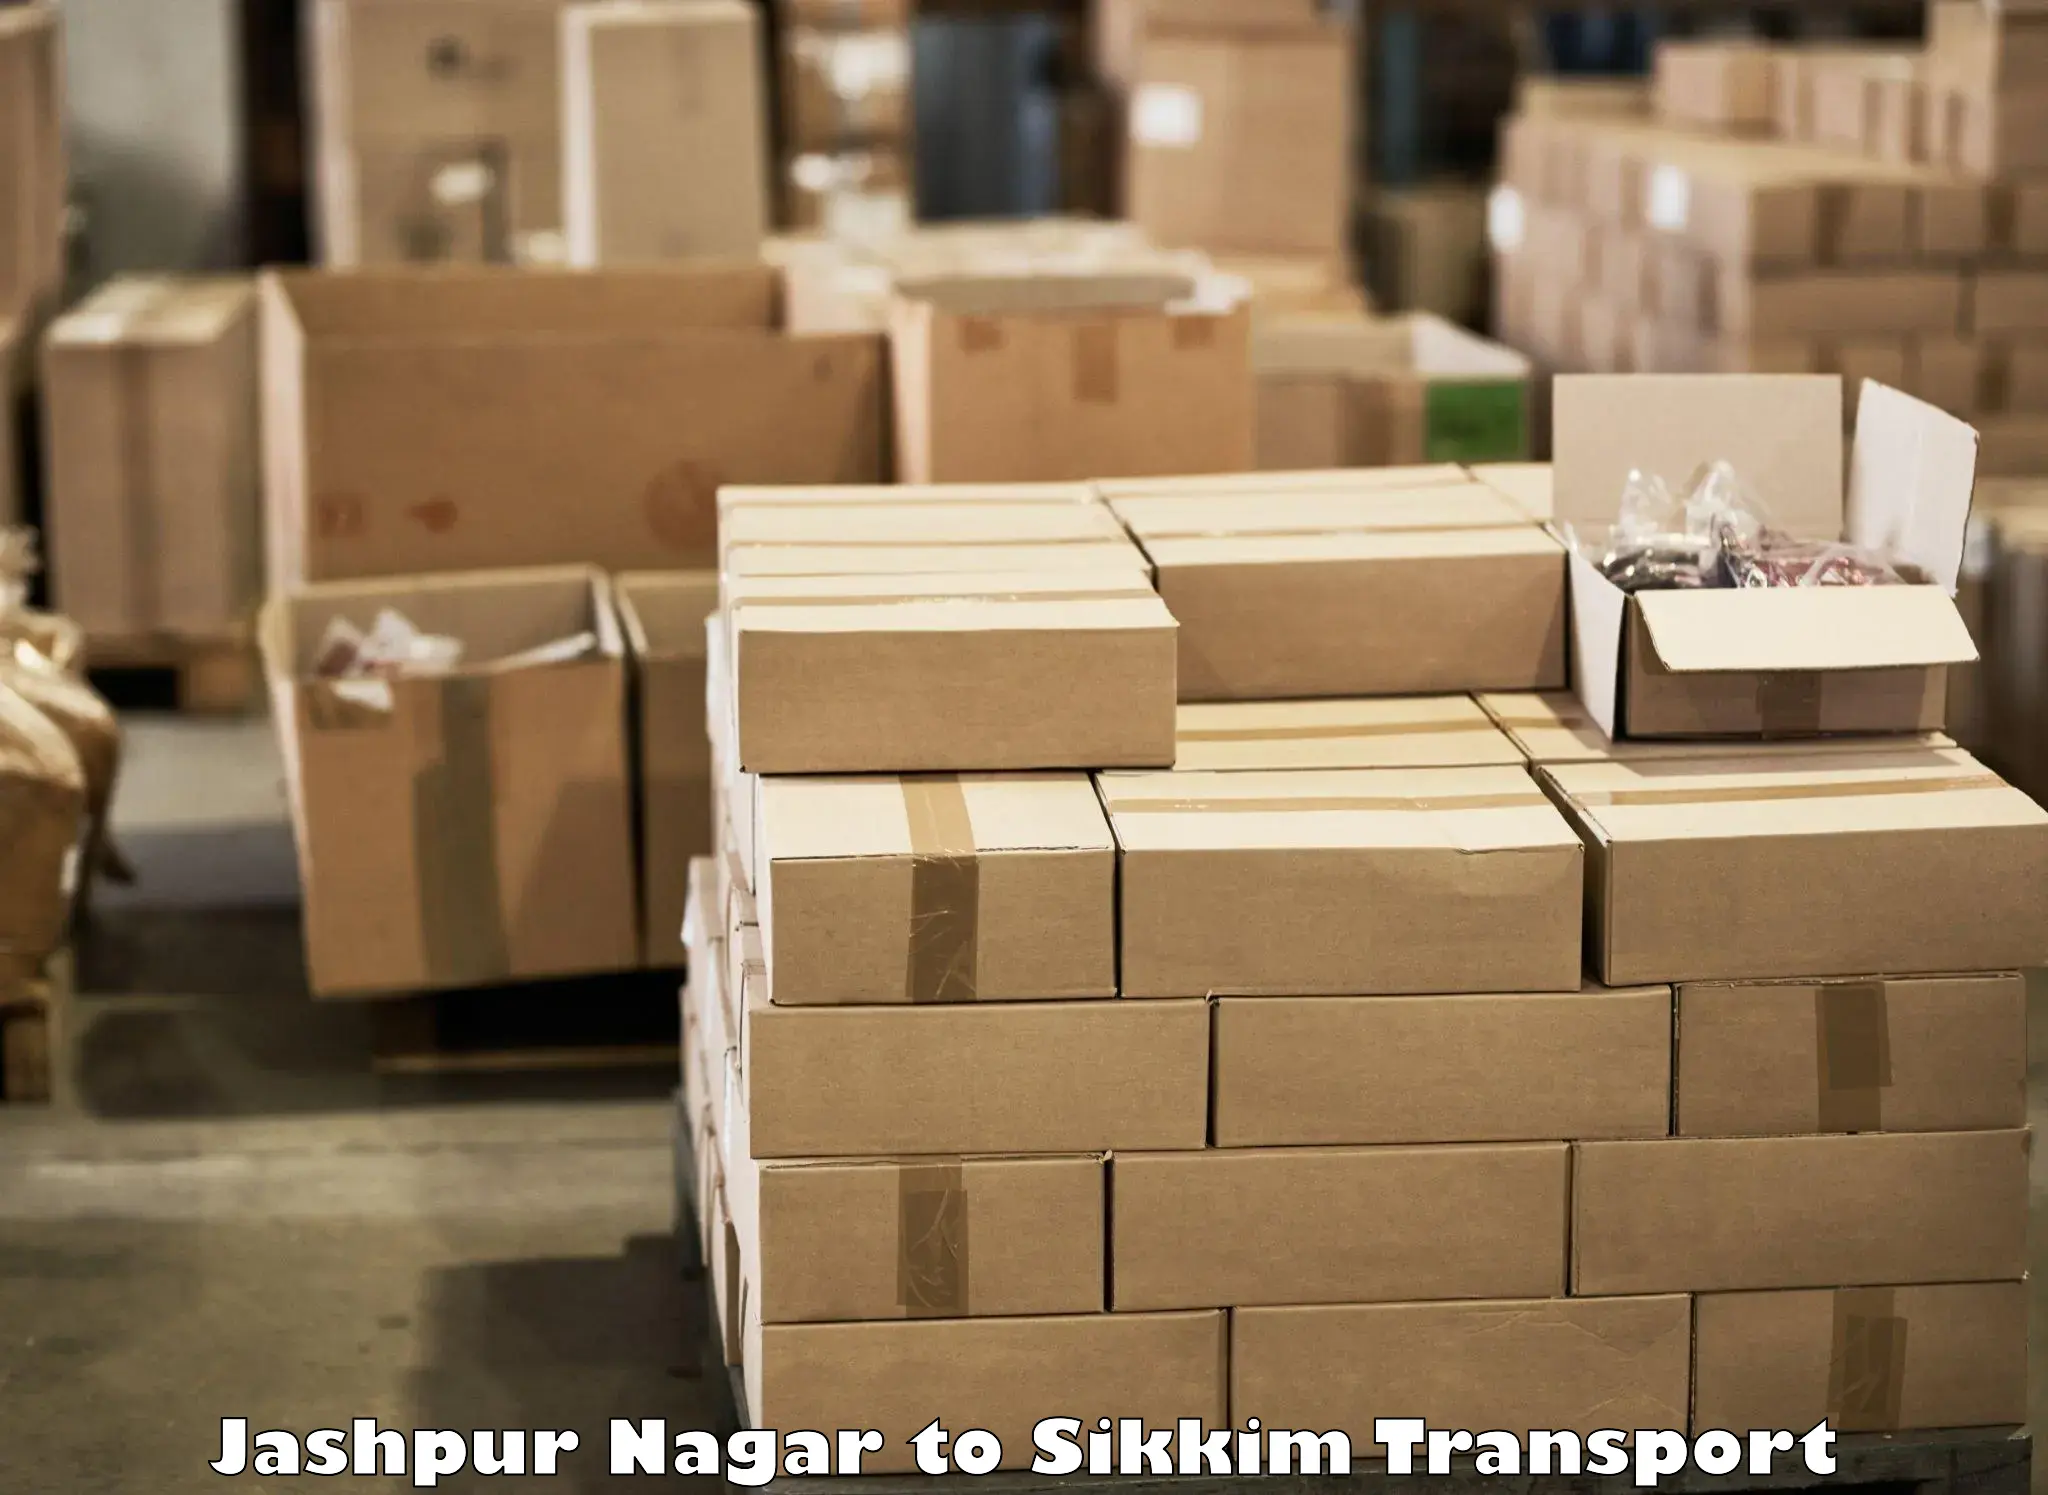 Online transport service Jashpur Nagar to Sikkim